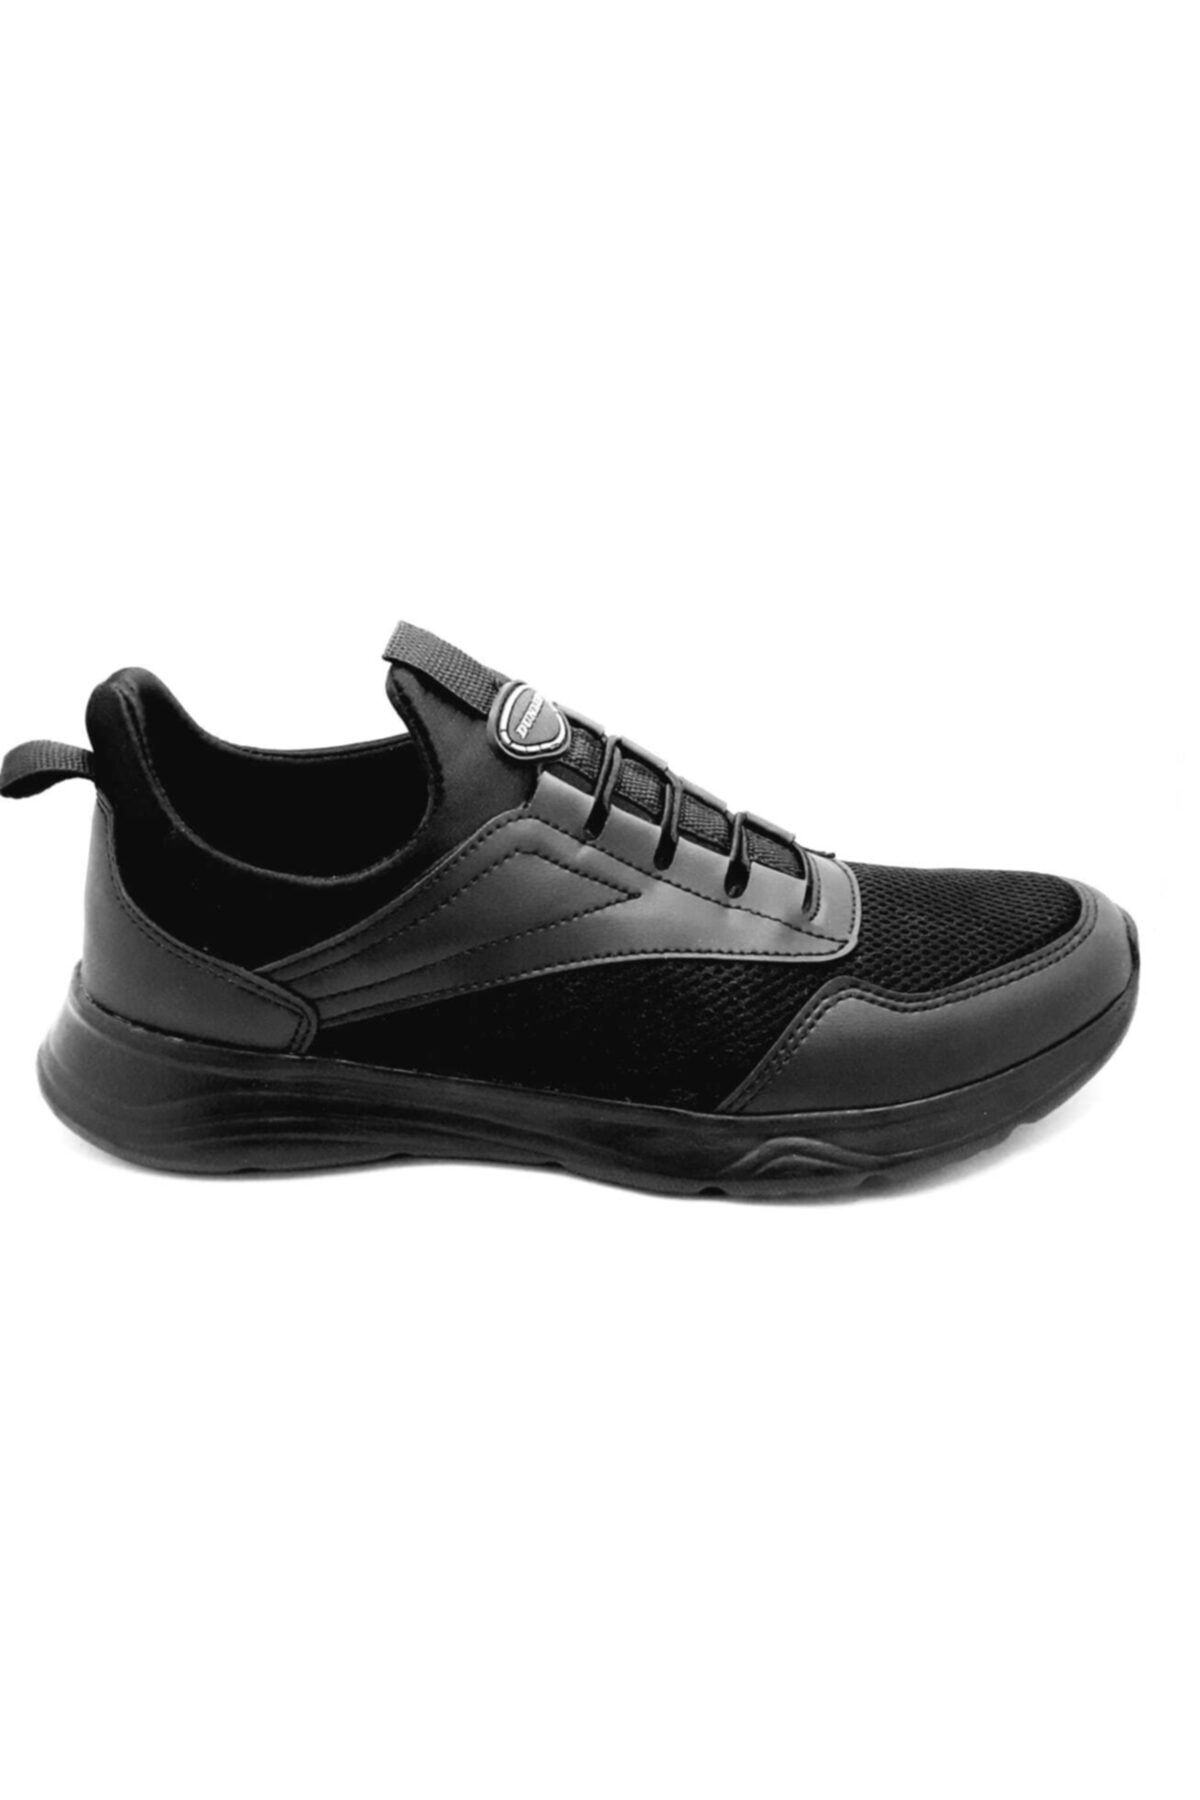 Dunlop Dnp-1705 Siyah 45-47 Büyük Numara Erkek Spor Ayakkabı